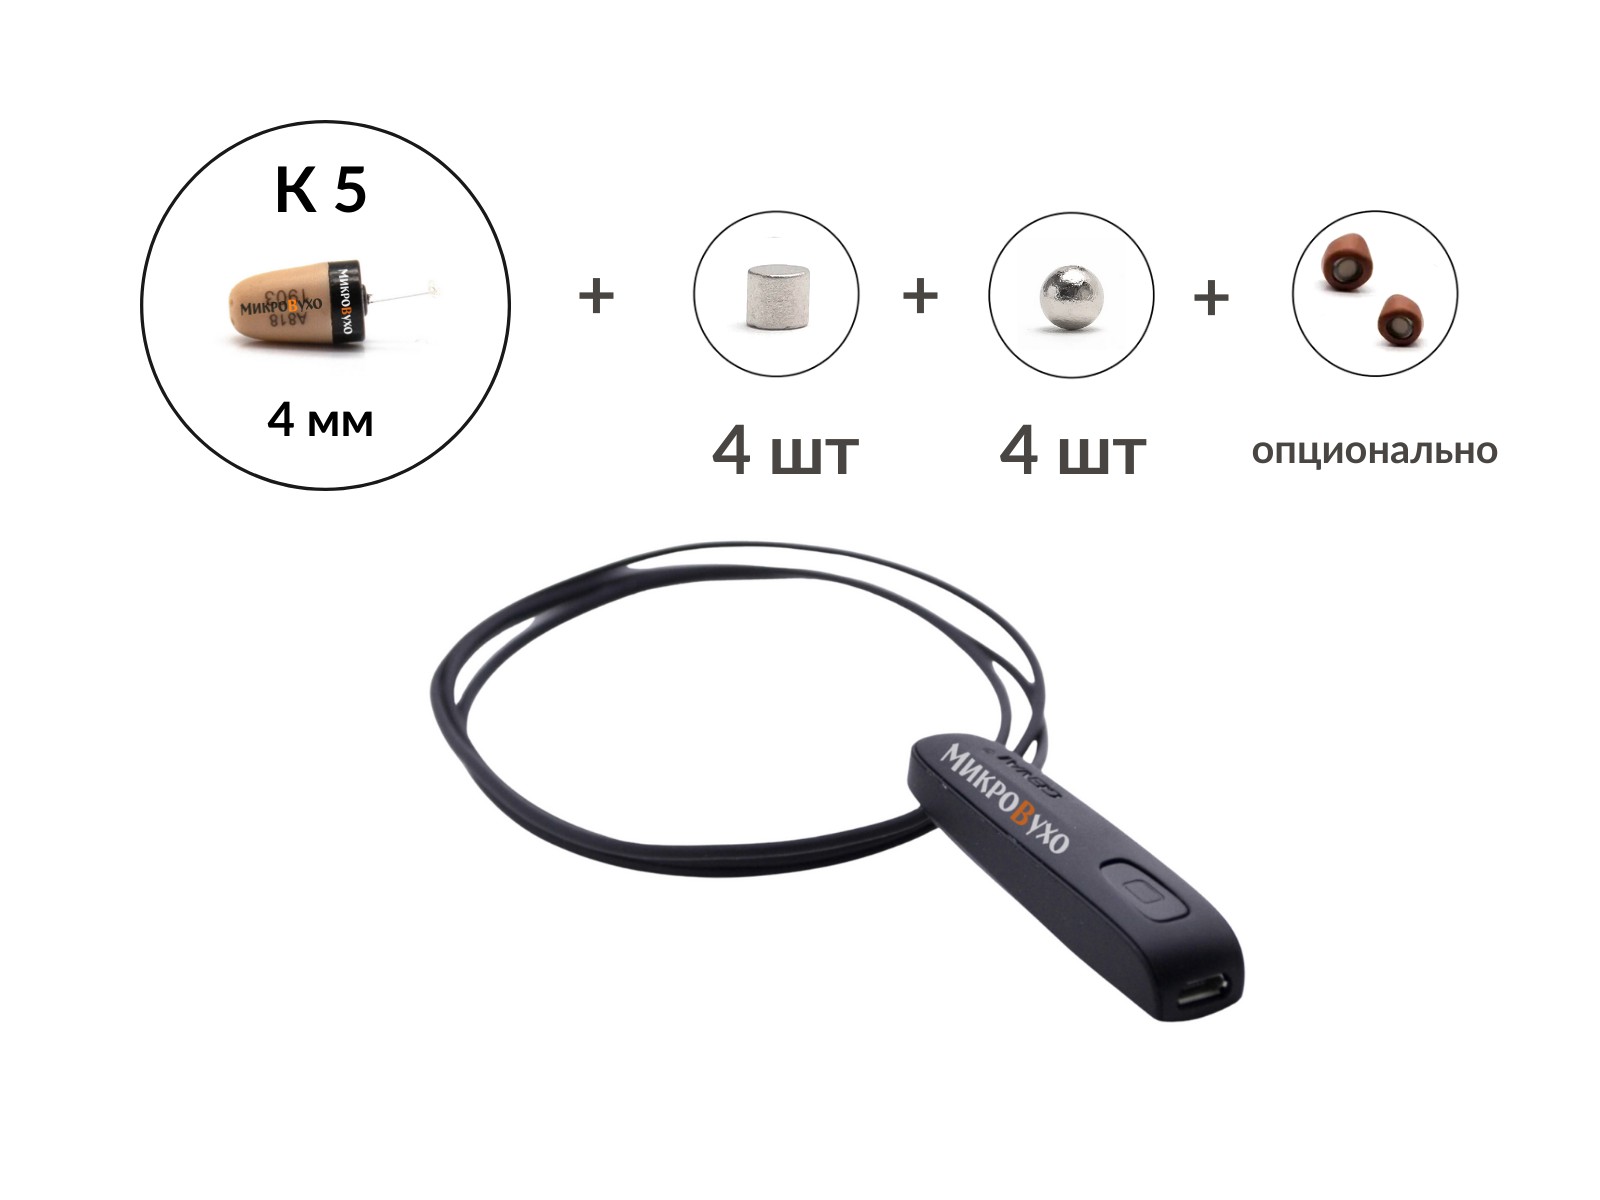 Универсальная гарнитура Bluetooth Basic с капсулой K5 4 мм и магнитами 2 мм - изображение 4